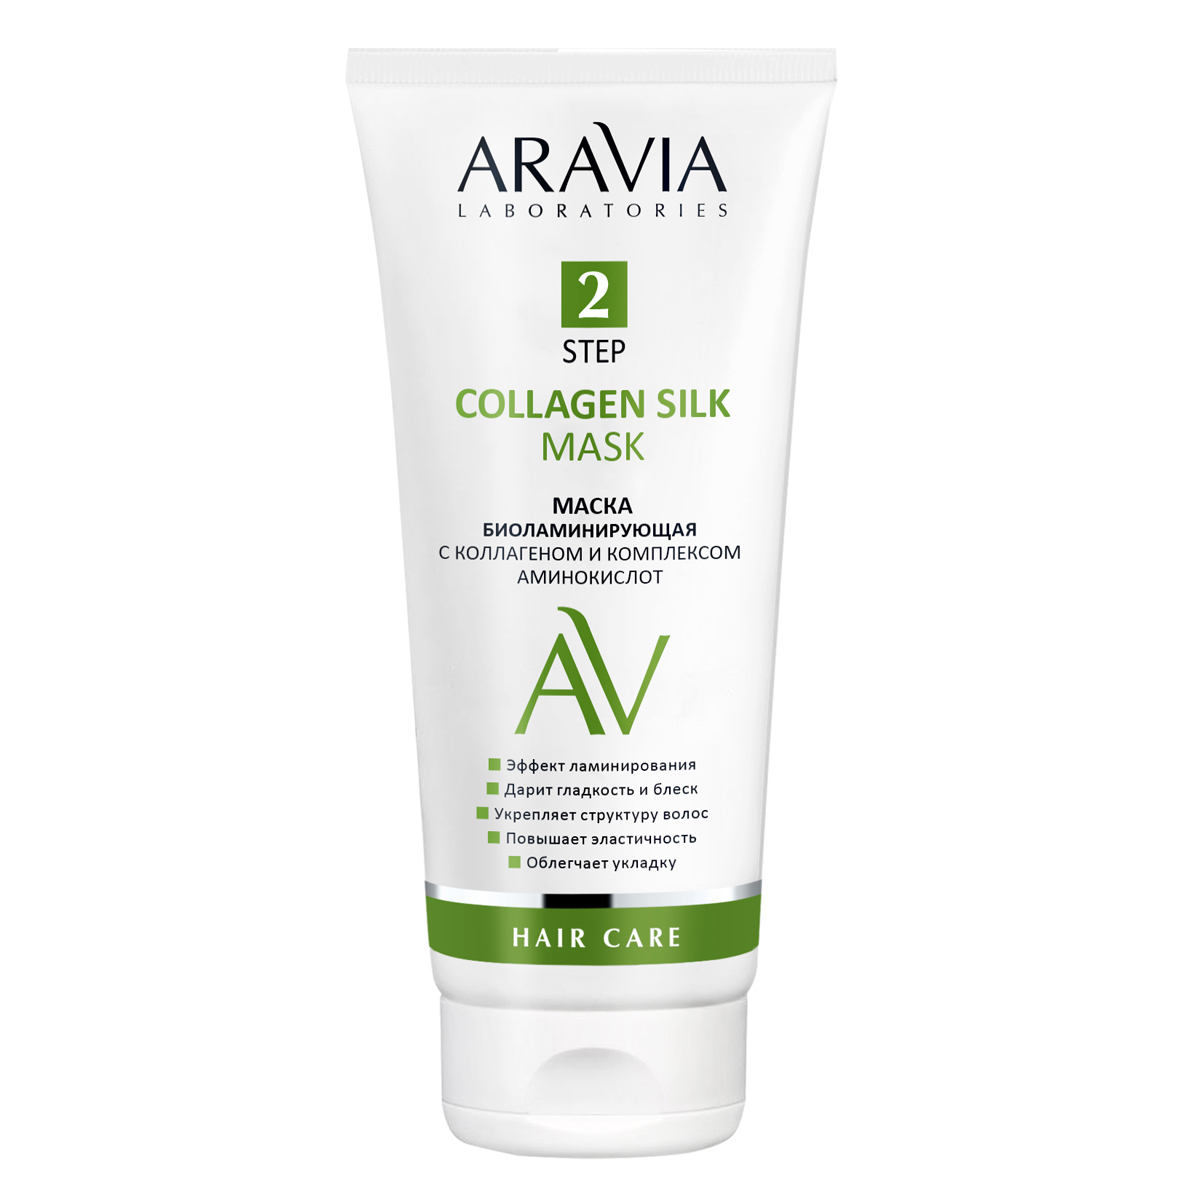 Aravia Laboratories Маска биоламинирующая с коллагеном и комплексом аминокислот Collagen Silk Mask, 200 мл (Aravia Laboratories, Уход за волосами)